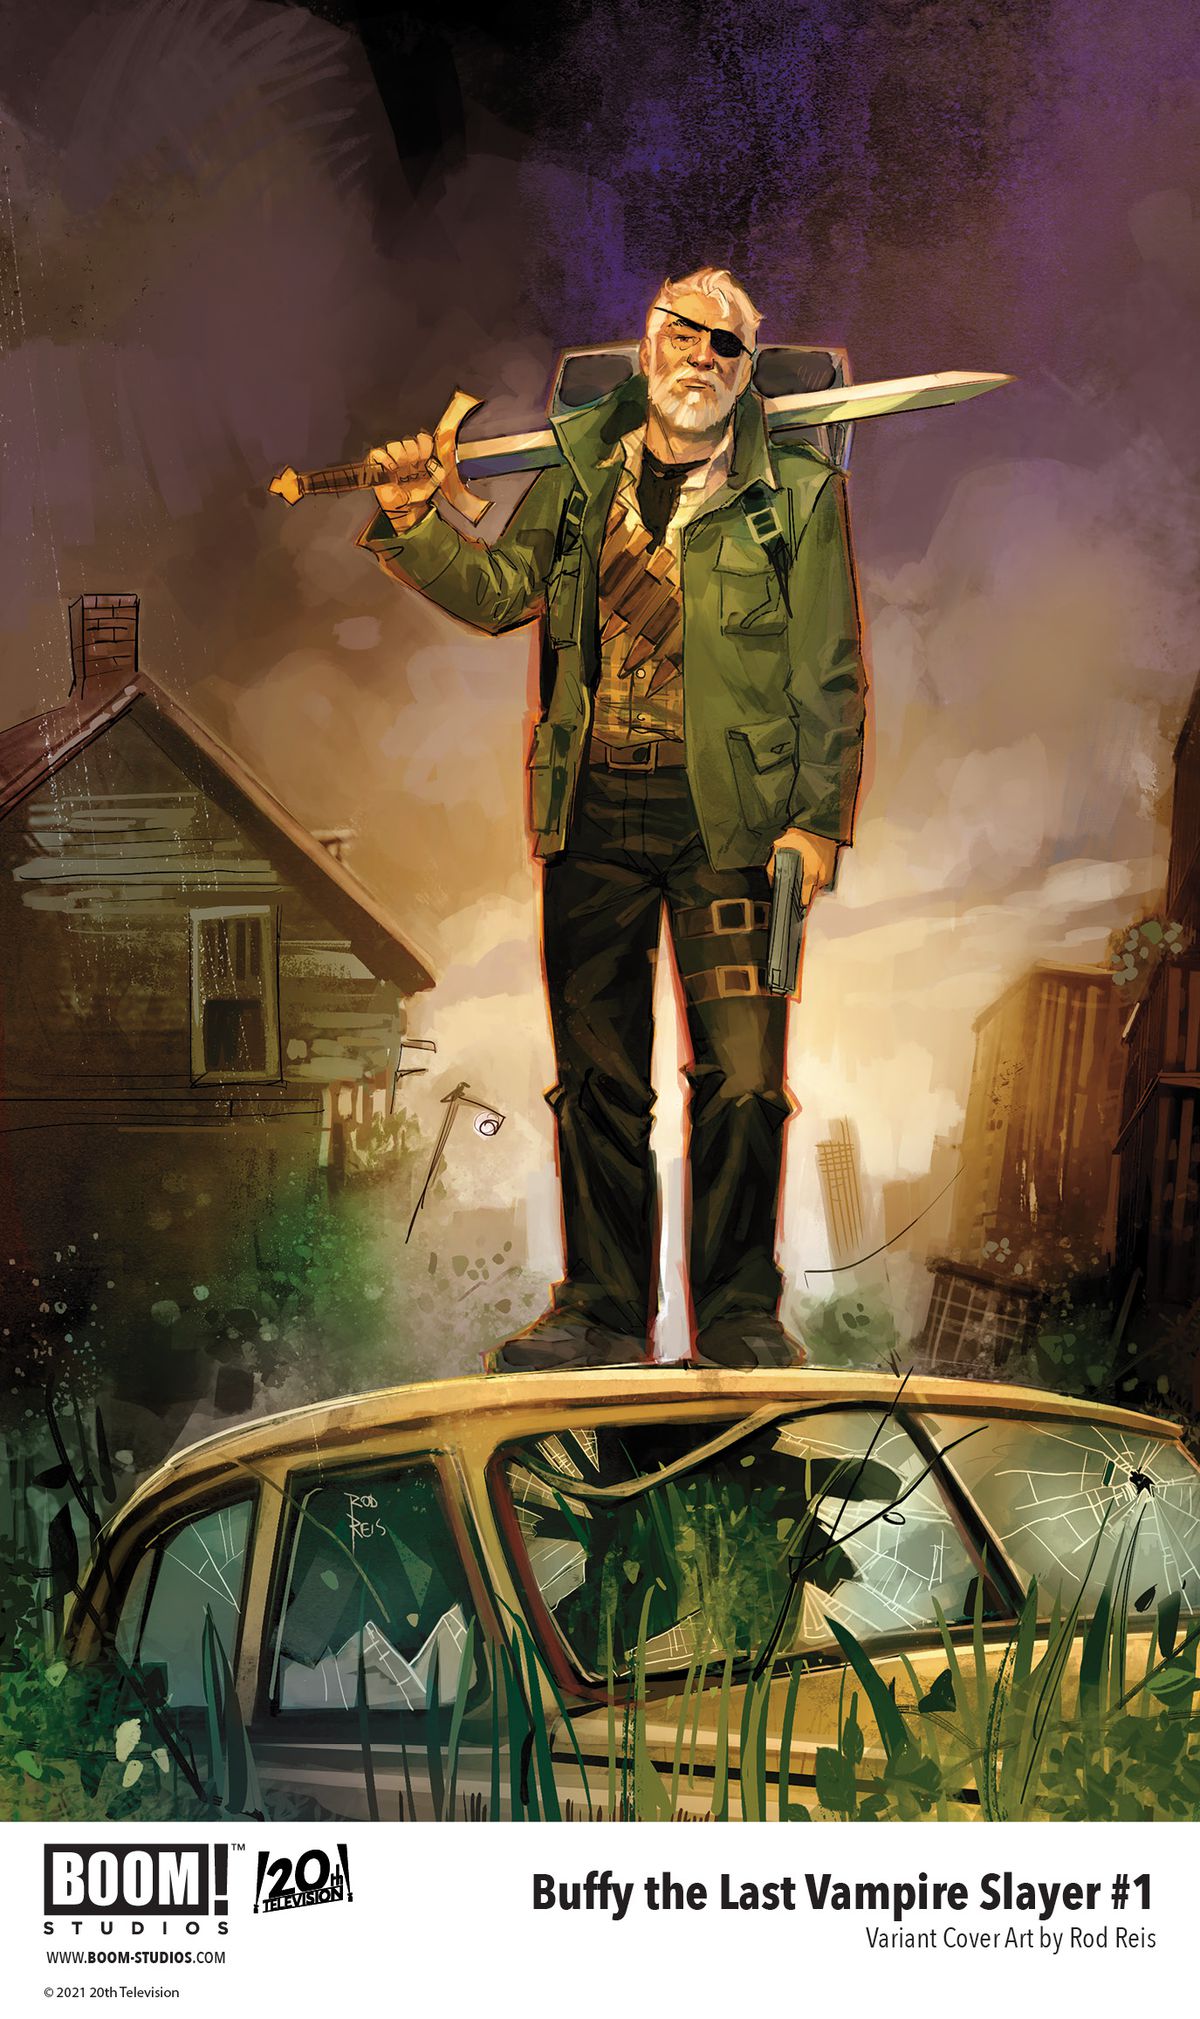 Buffy The Last Vampire Slayer - Variant di copertina per il primo numero, che mostra un vecchio in una scena post-apocalittica con una spada a tracolla.